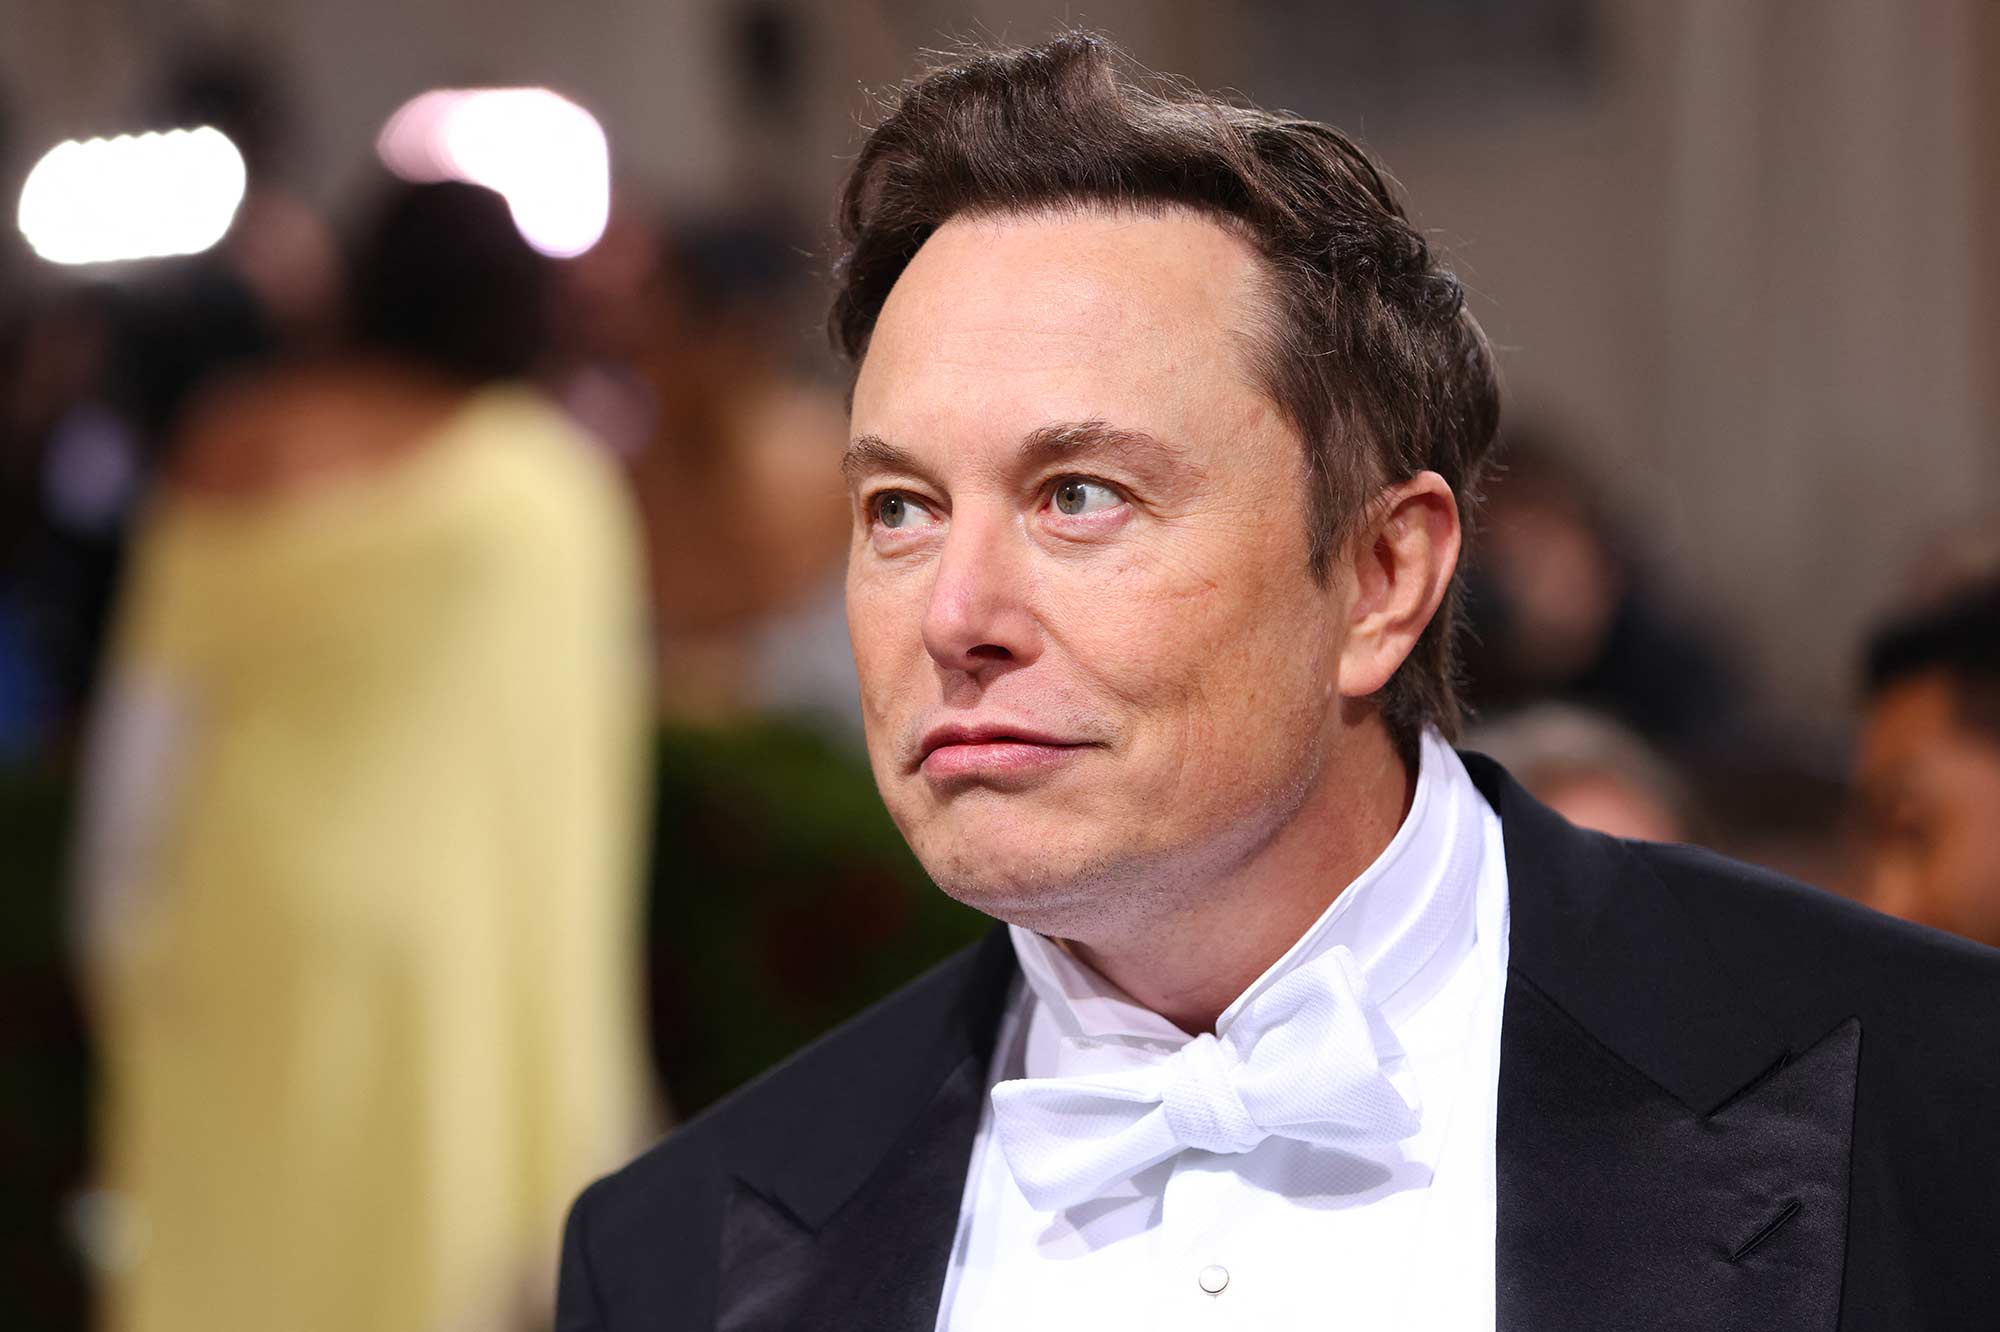 Elon Musk rejette des accusations d'agressions sexuelles, évoque un complot